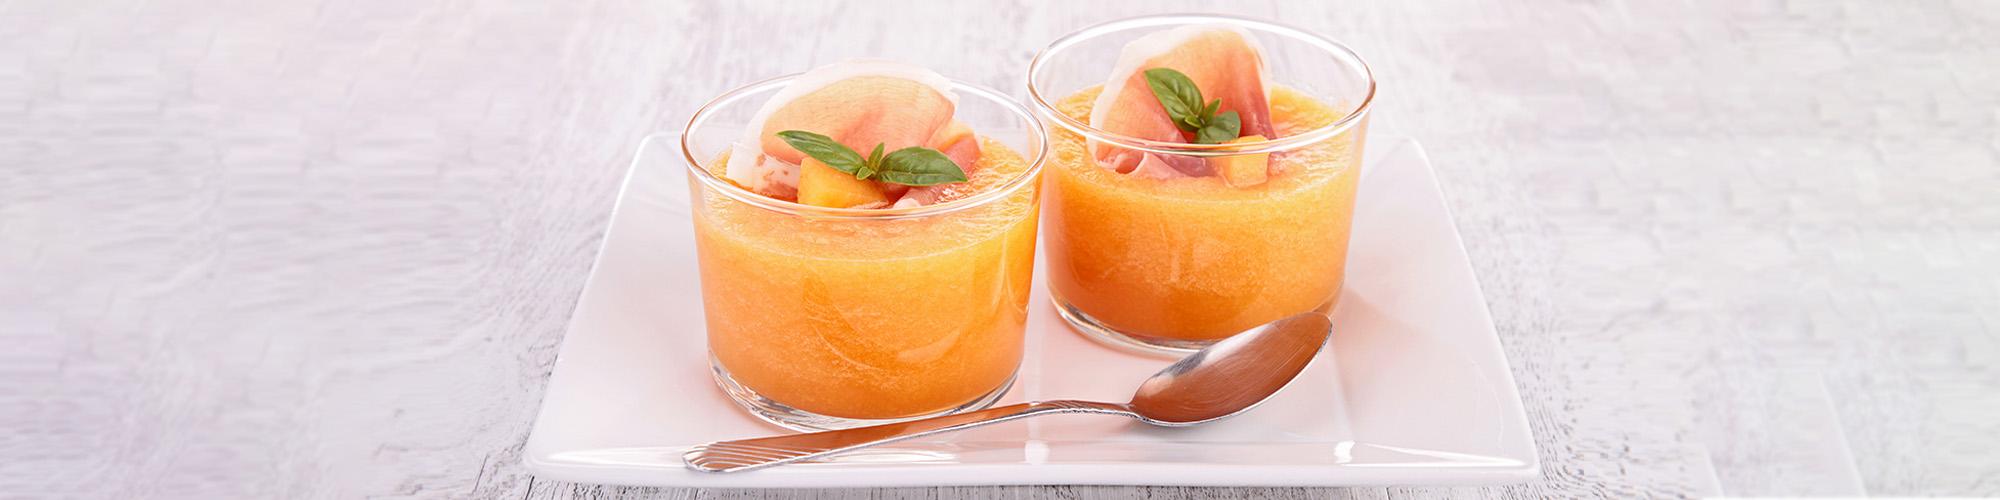 Kalte Melonensuppe mit Rohschinken